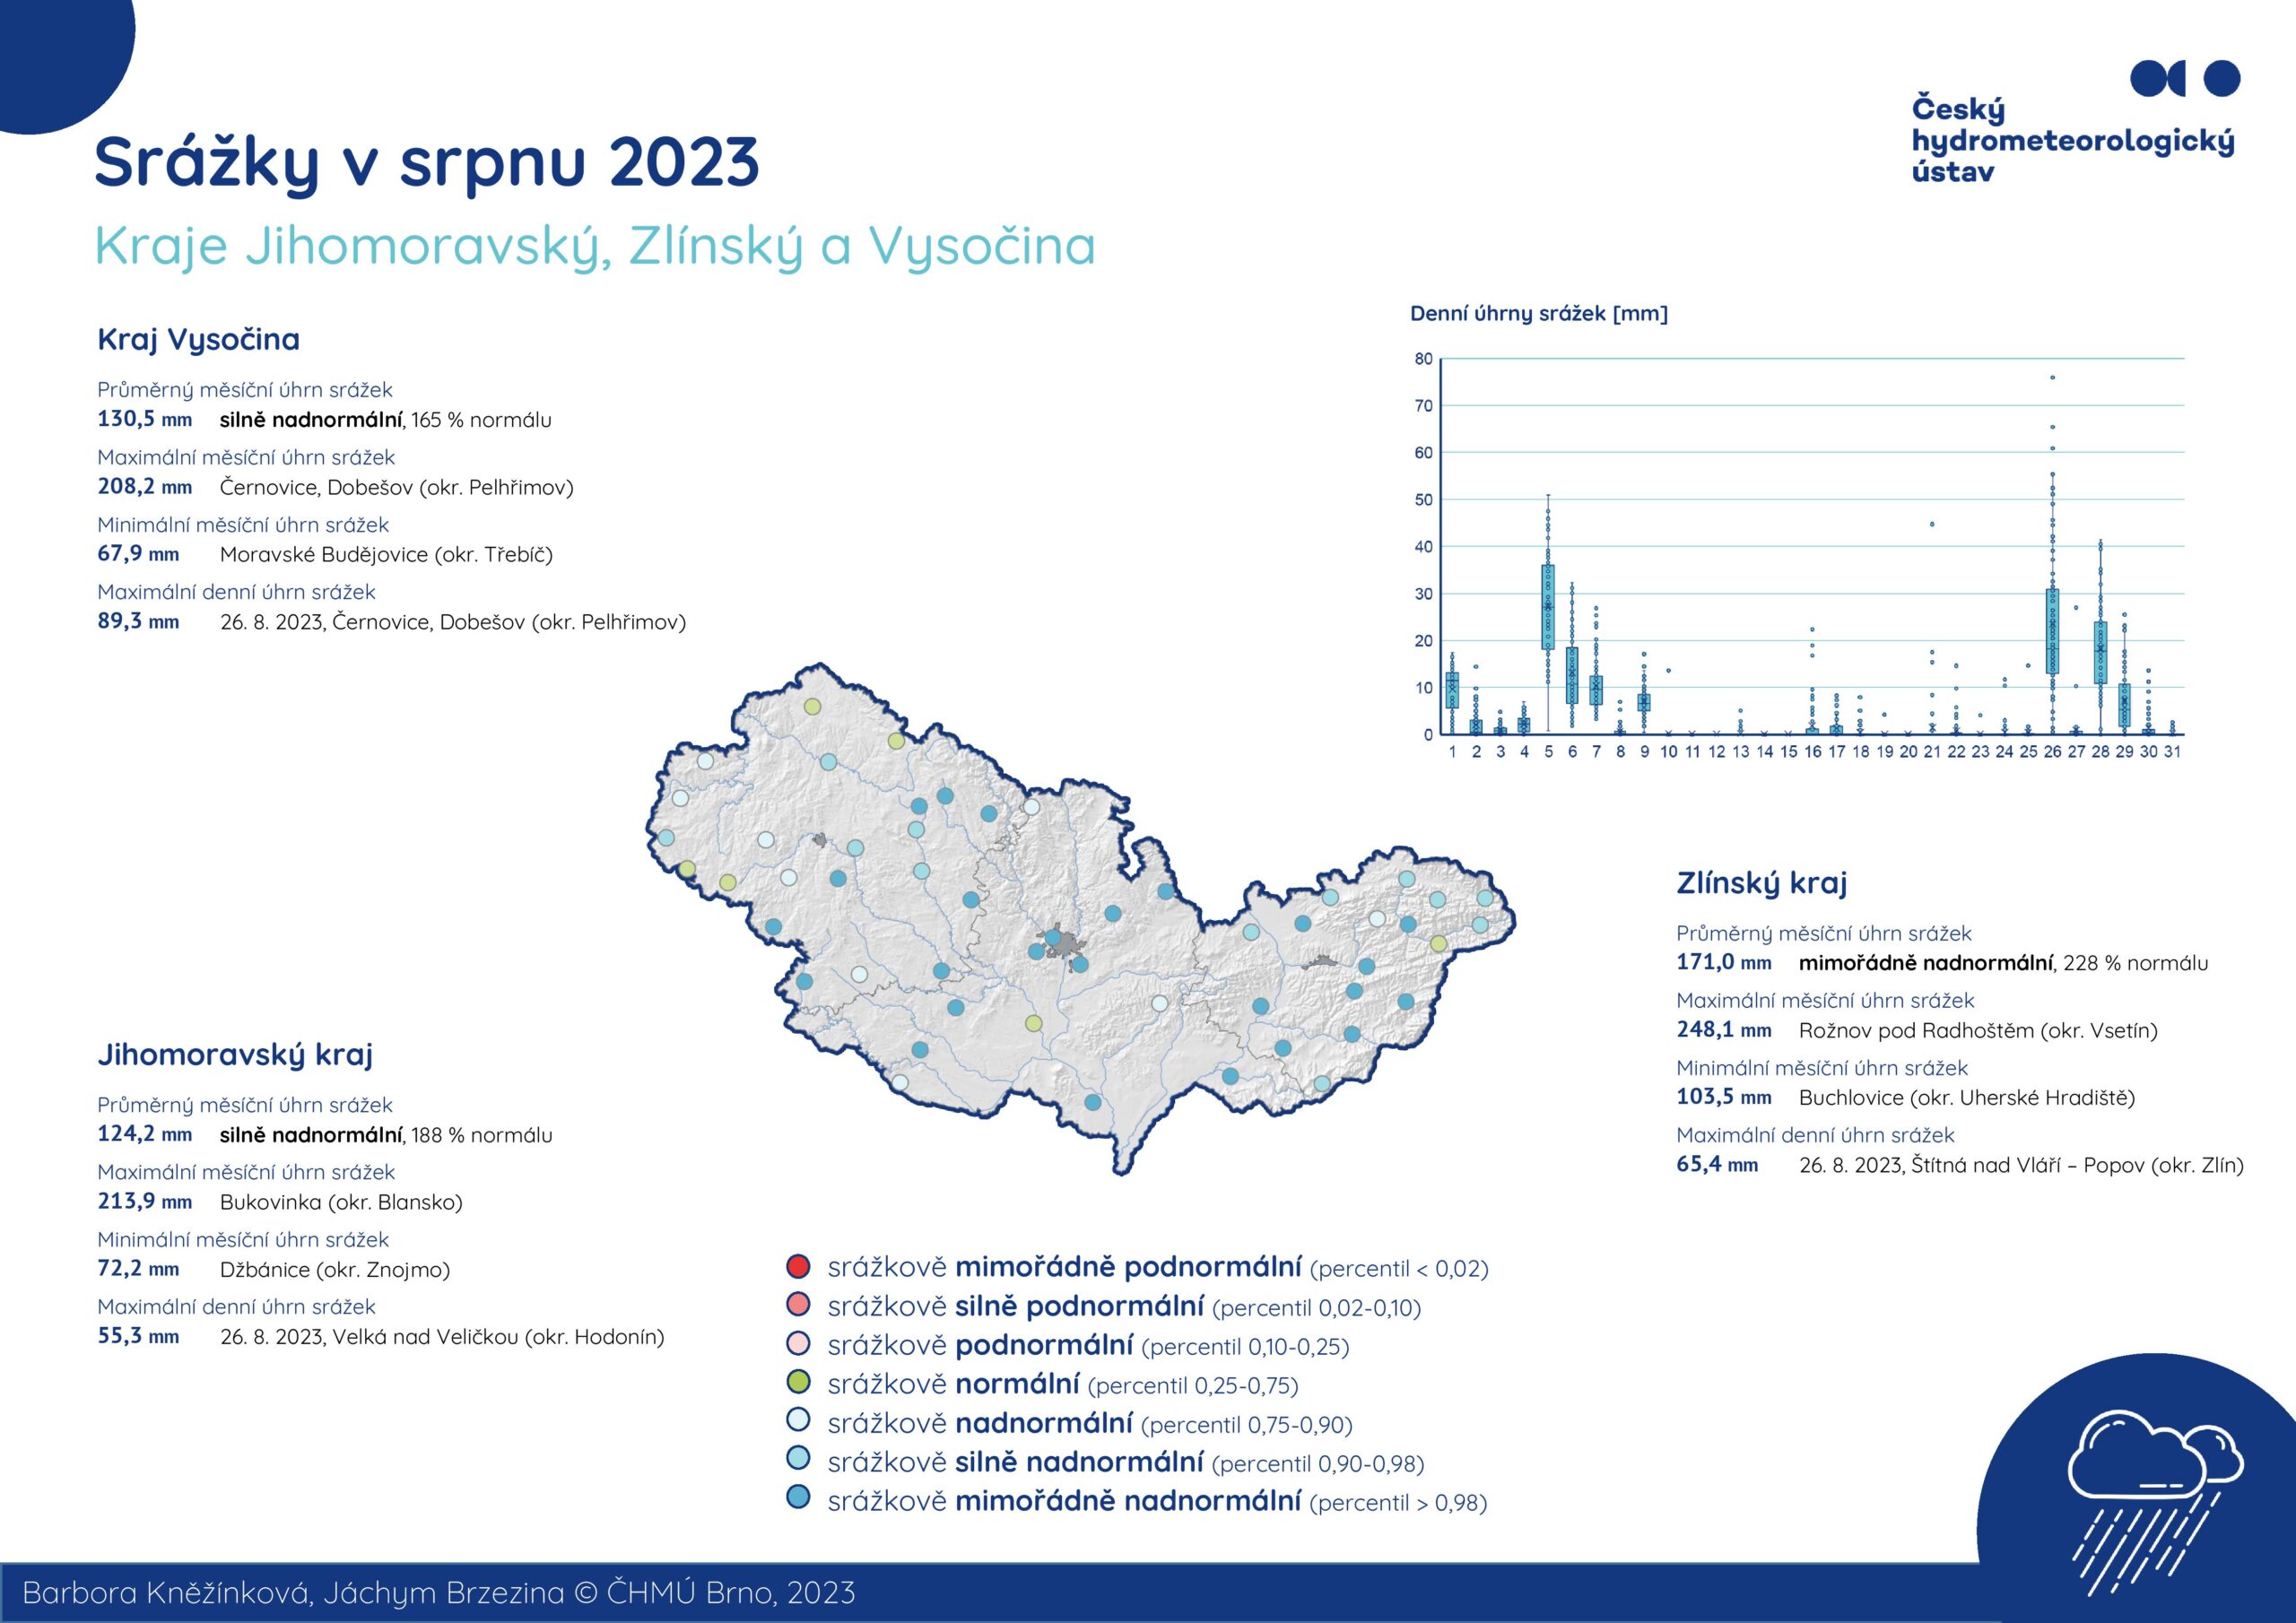 Množství srážek v srpnu 2023 – Jihomoravský kraj, Zlínský kraj a Kraj Vysočina1 min čtení